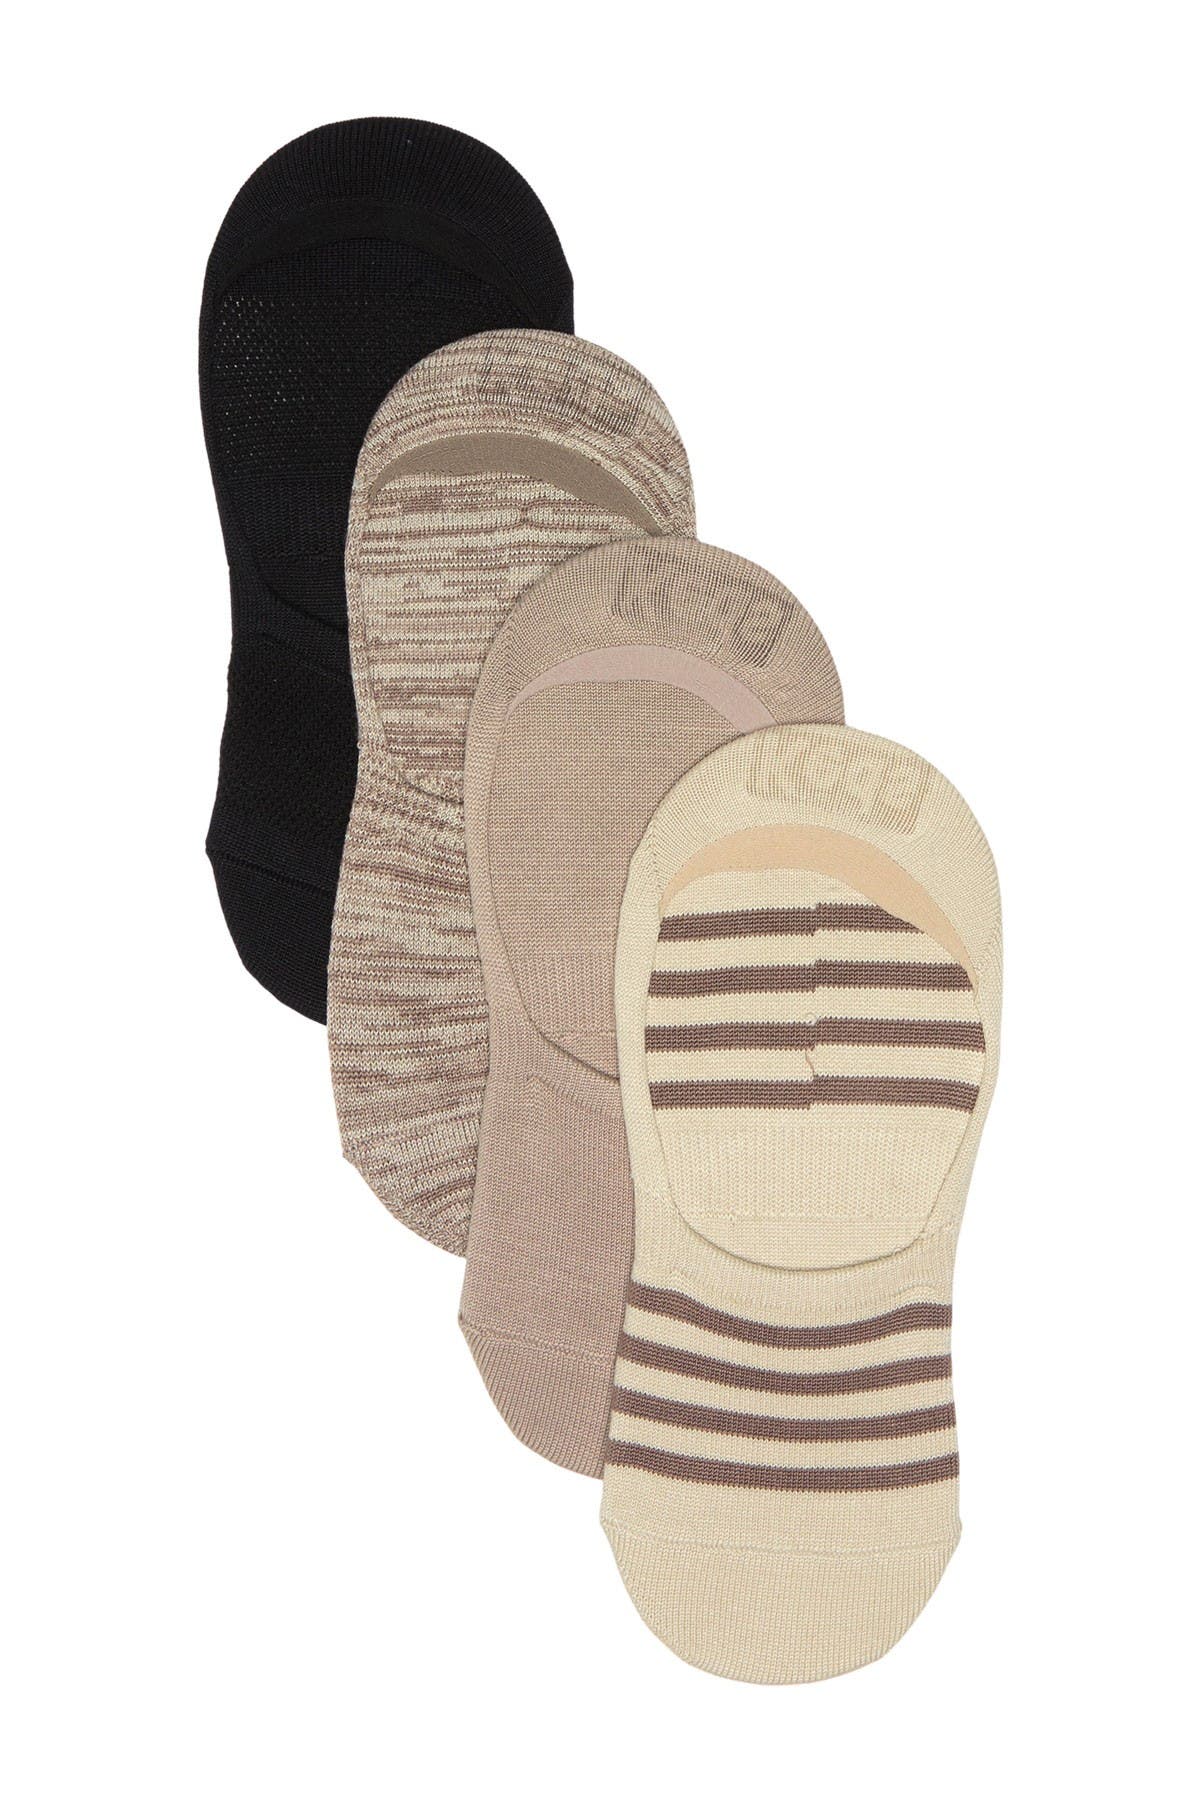 keds liner socks